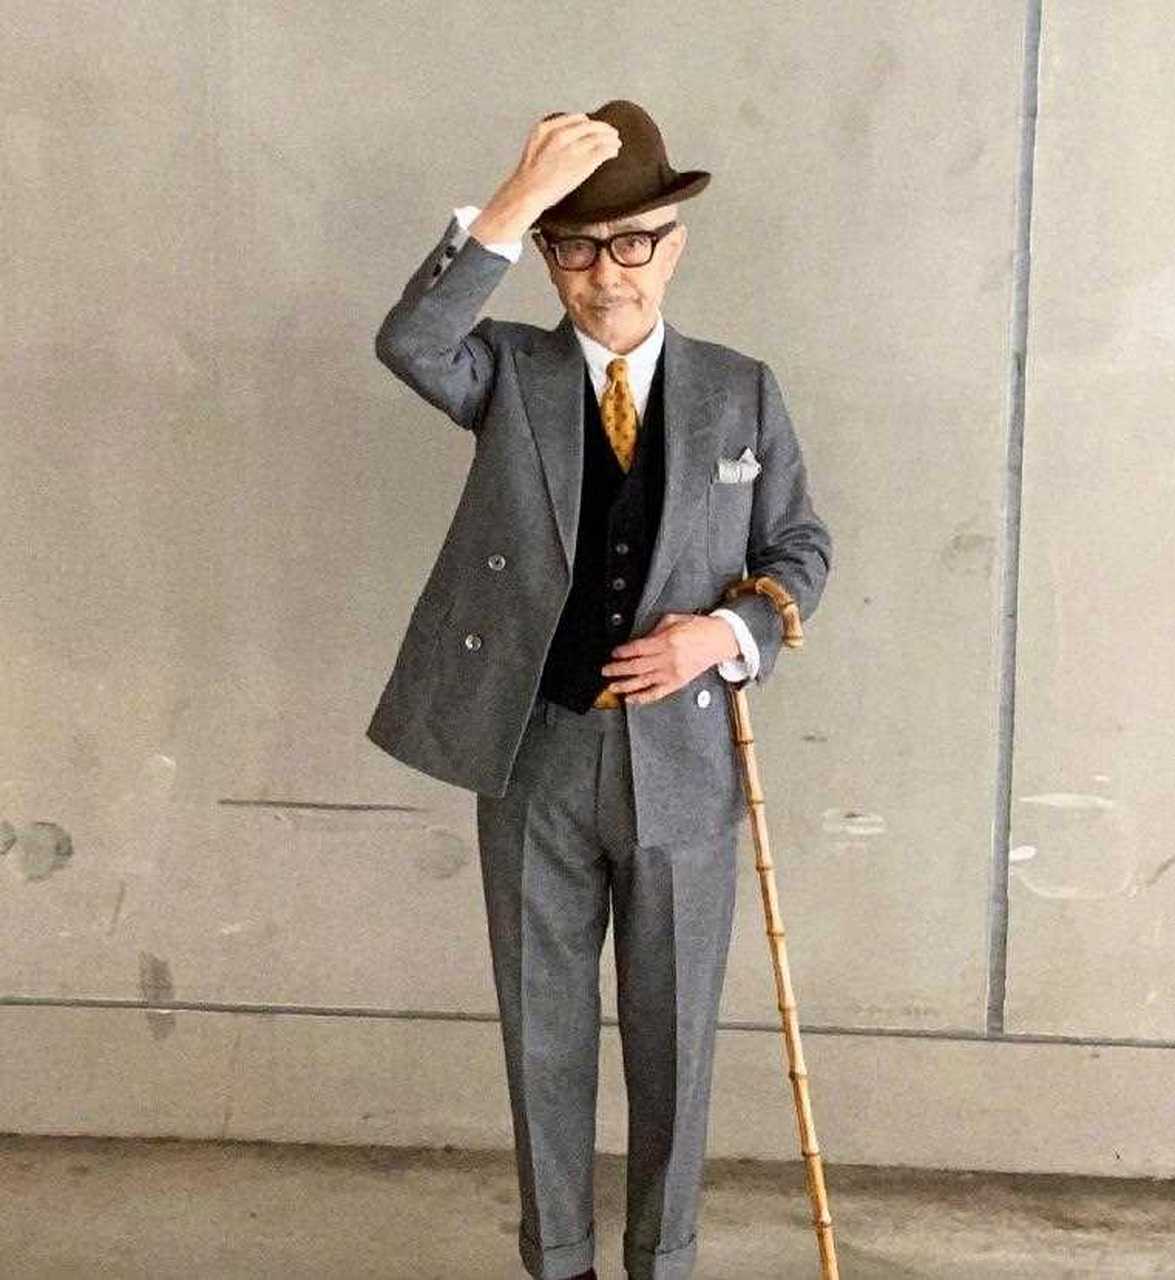 时尚不分年龄,穿搭不受身材限制,来自日本的爷爷kay,他的绅士穿铑